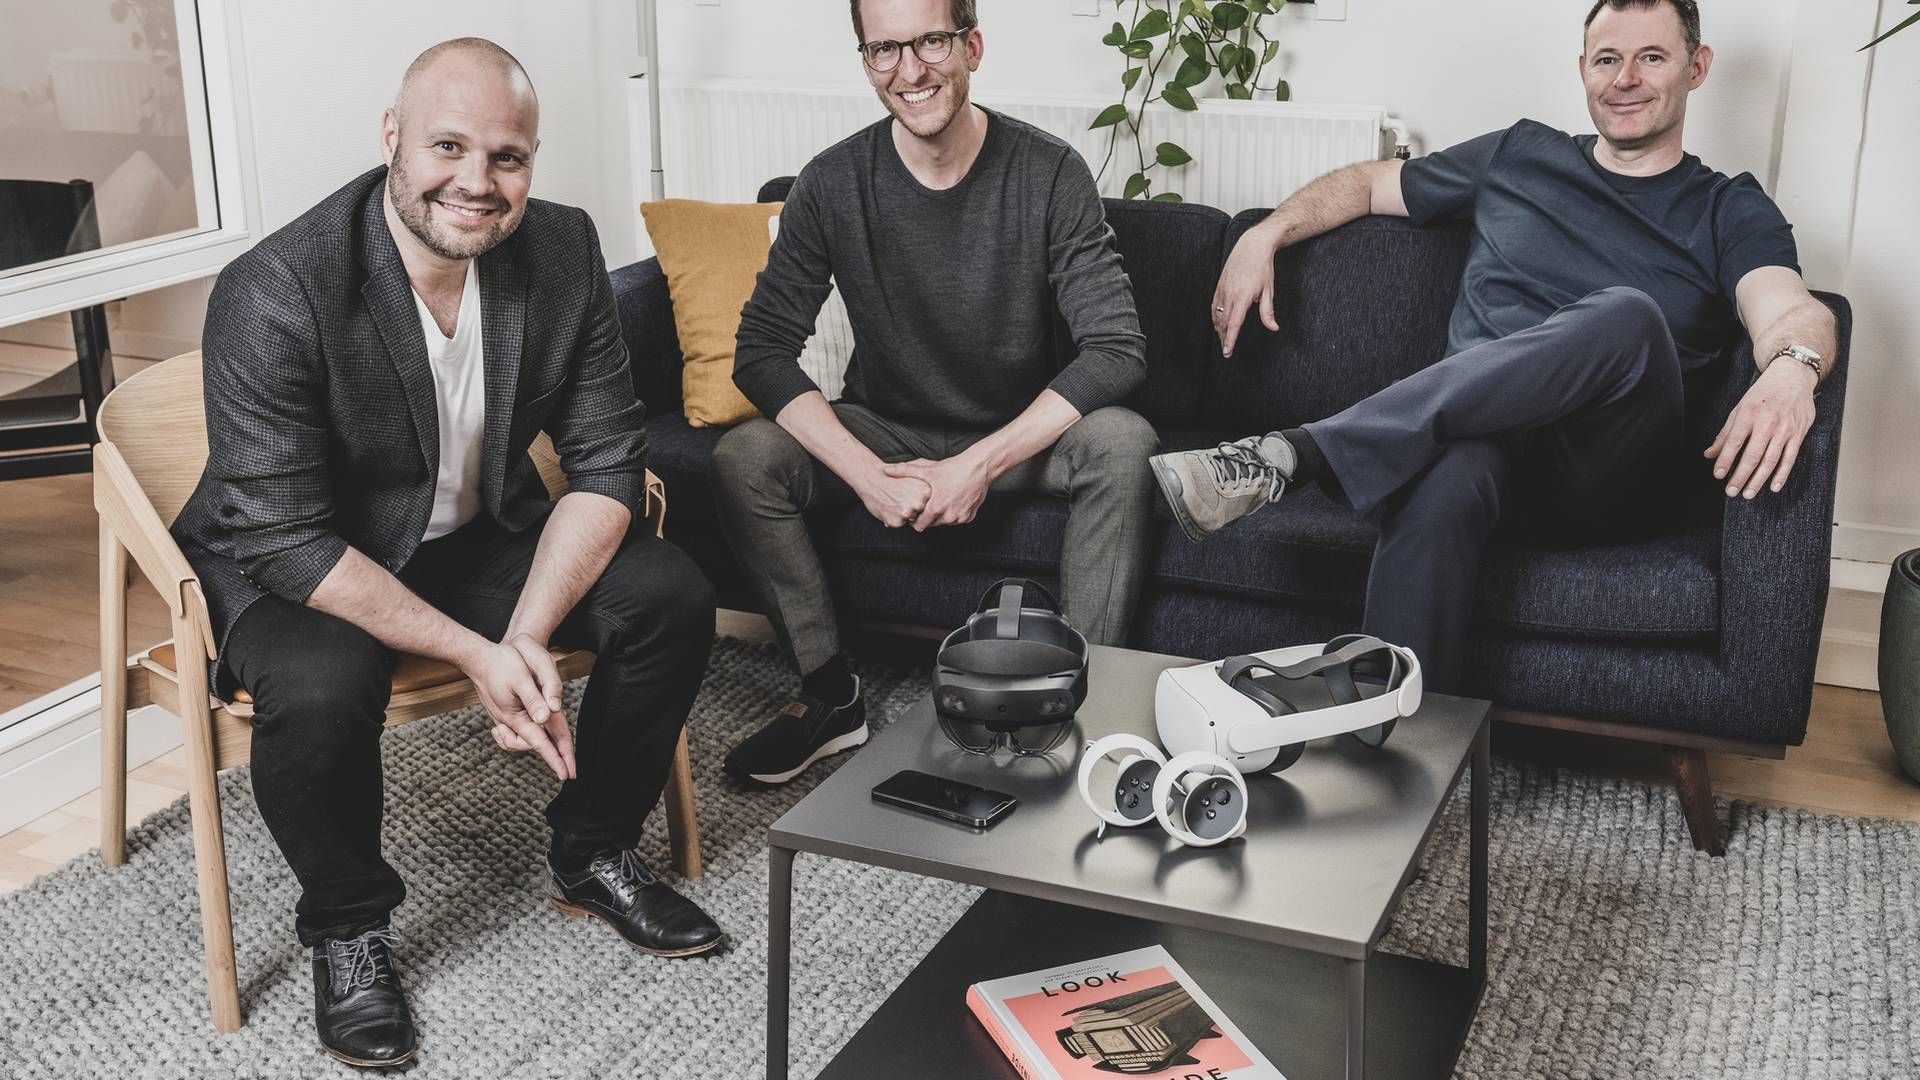 Ledelsen i SynergyXR, som har fået tilført ny kapital. Fra venstre mod højre: Mads Troelsgaard (CEO), Sune Wolff (CTO) og Thomas Fenger (CXO). | Foto: SynergyXR / PR